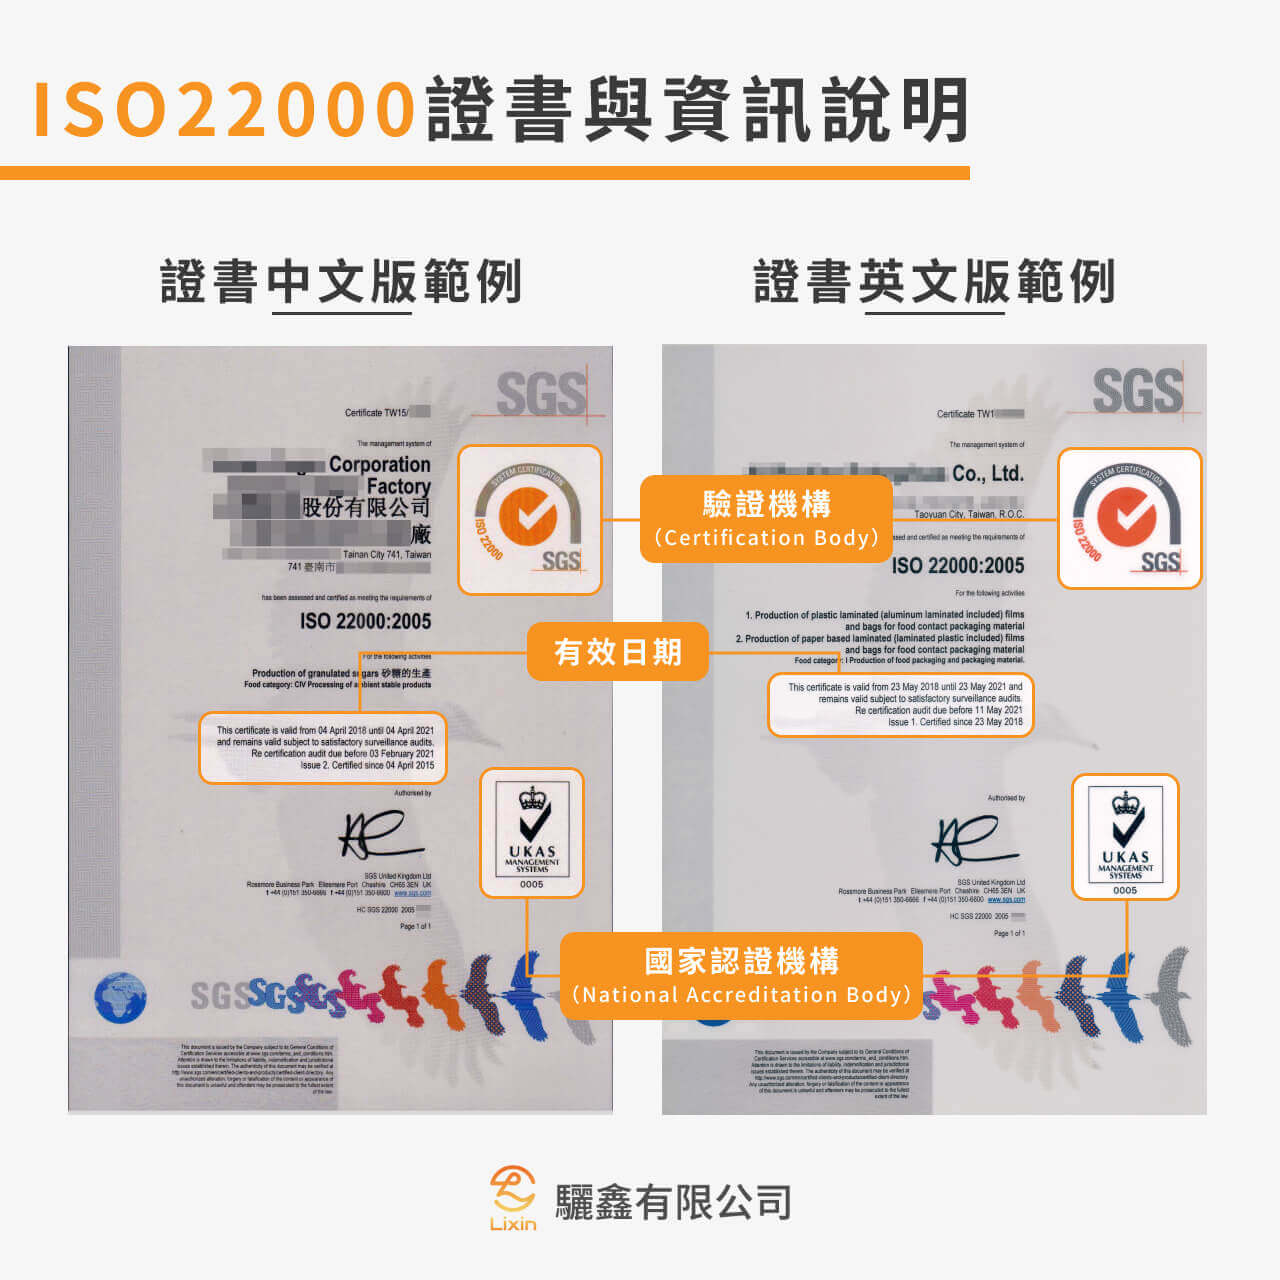 ISO22000證書範例與資訊說明